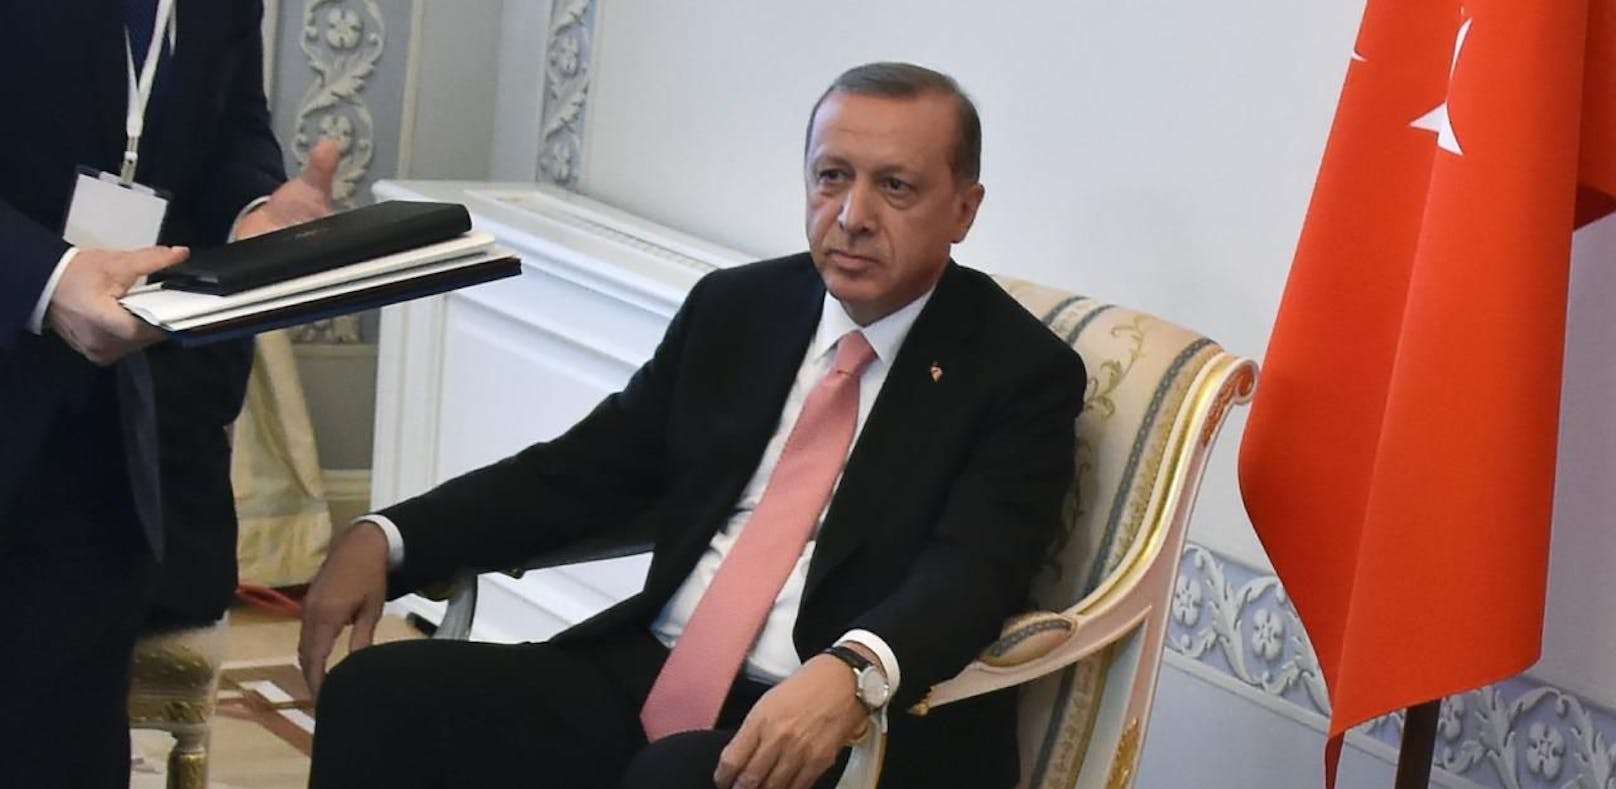 Türken rügen Botschafter für "unislamisches" Sitzen